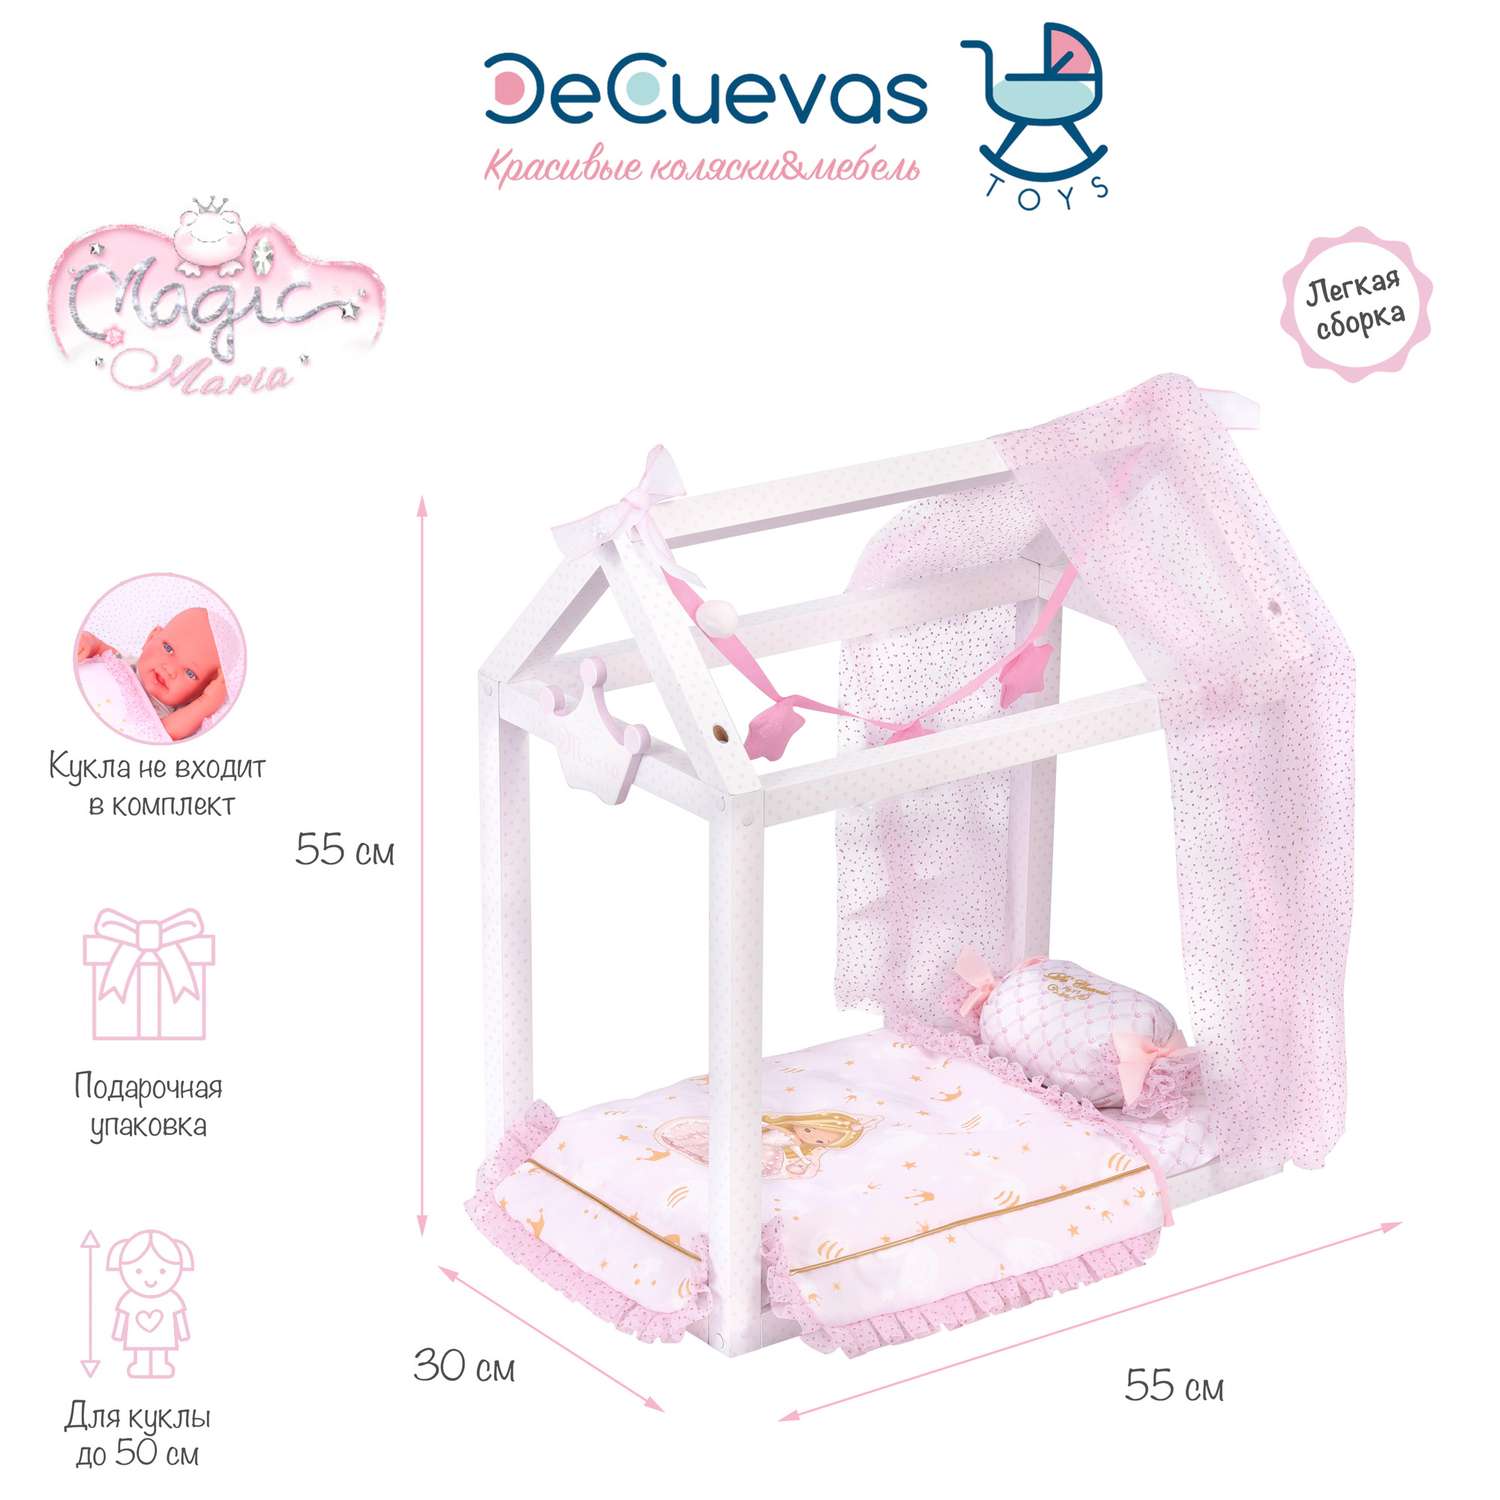 Кроватка для куклы DeCuevas Toys с аксессуарами серии Мария 55 см 55028 - фото 1